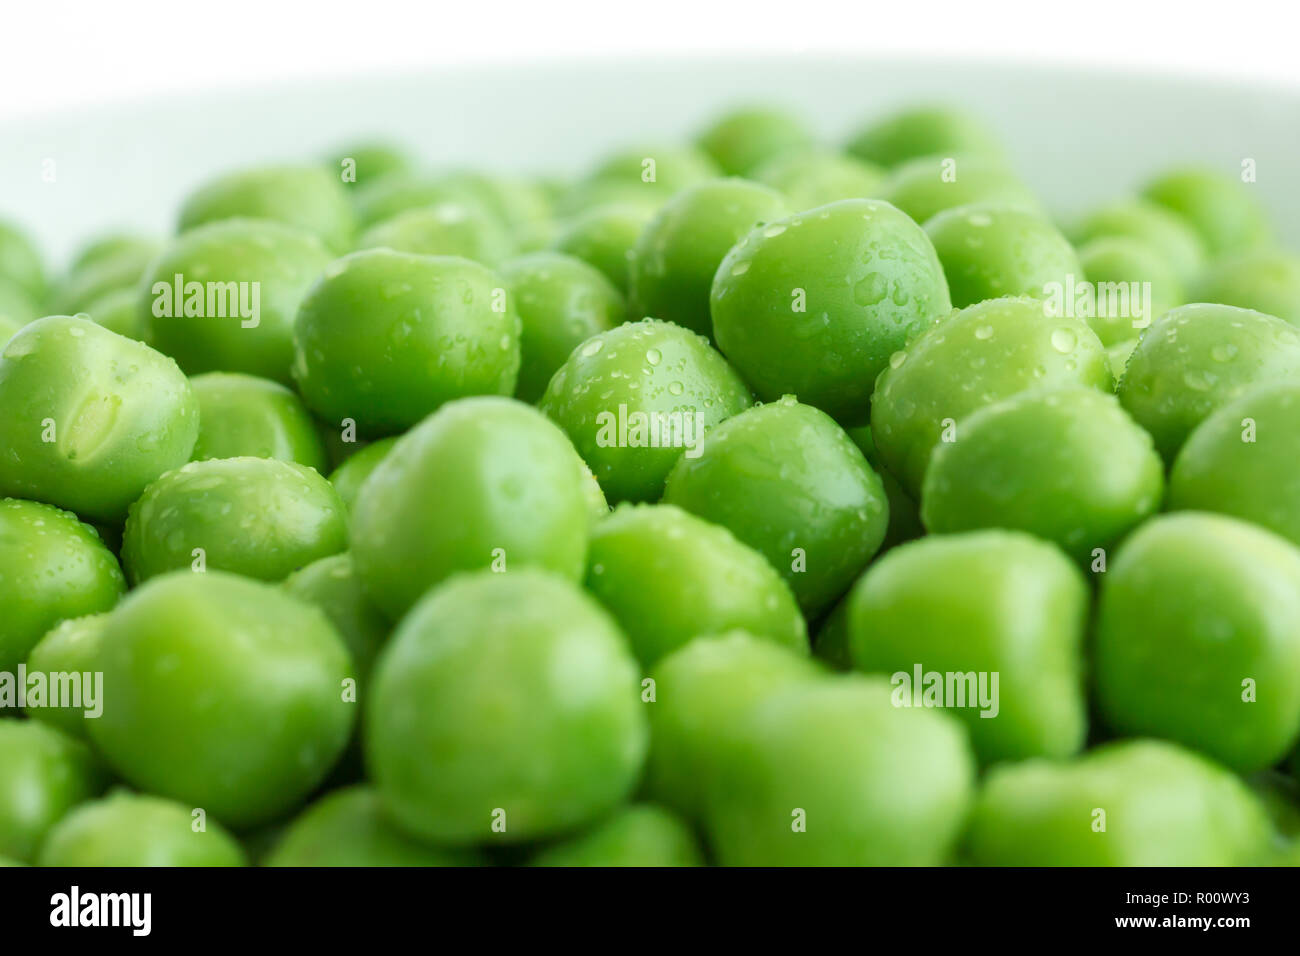 Detail of fresh garden peas. Stock Photo